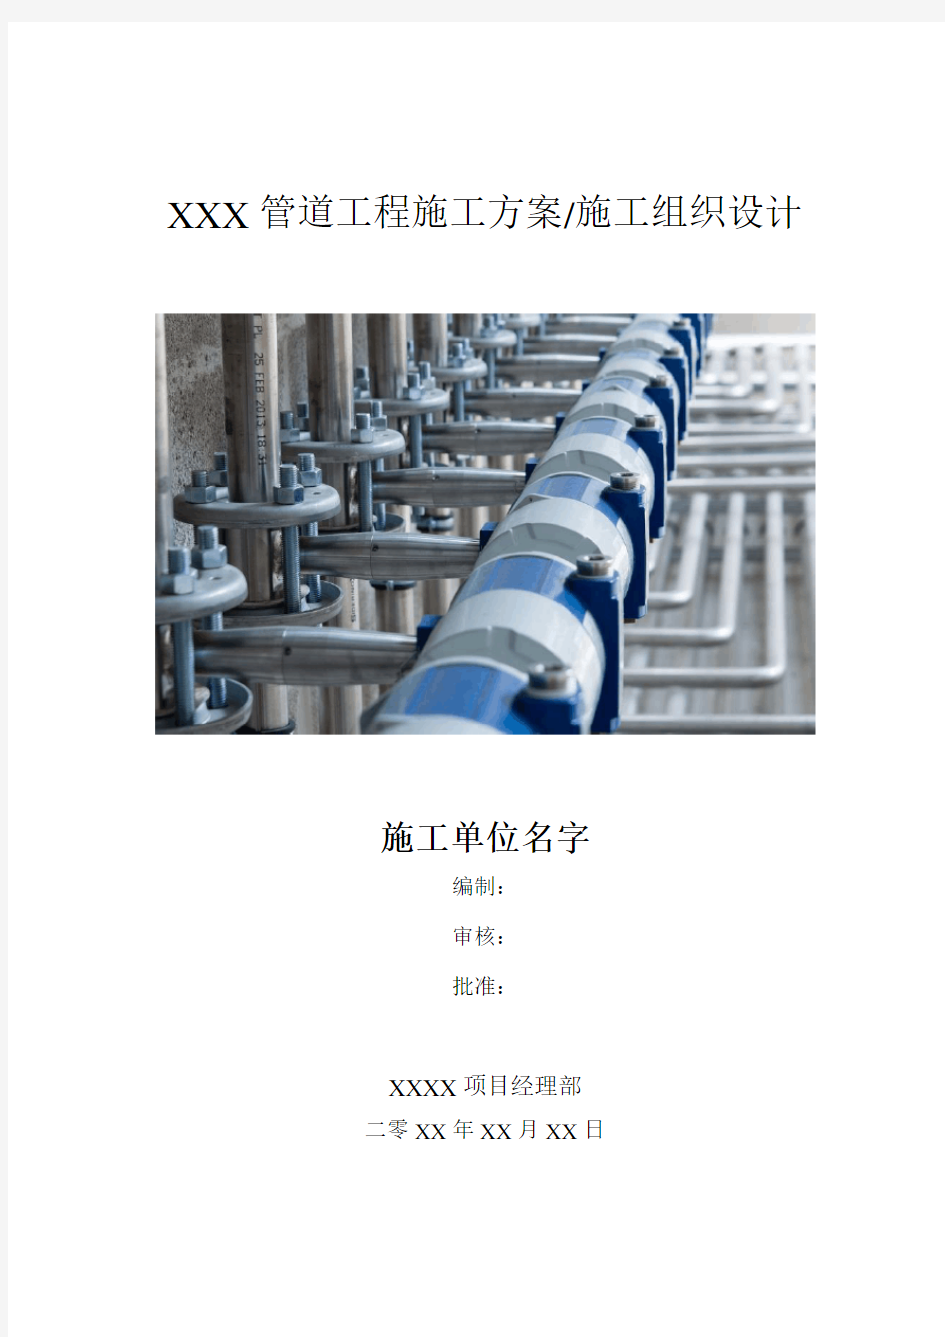 石油化工设备及管道安装工程施工方案(终稿)